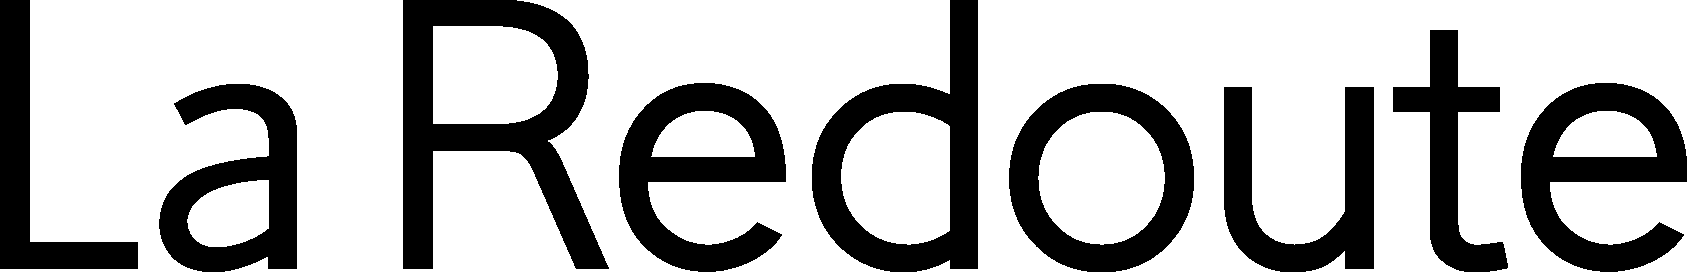 La Redoute Logo png